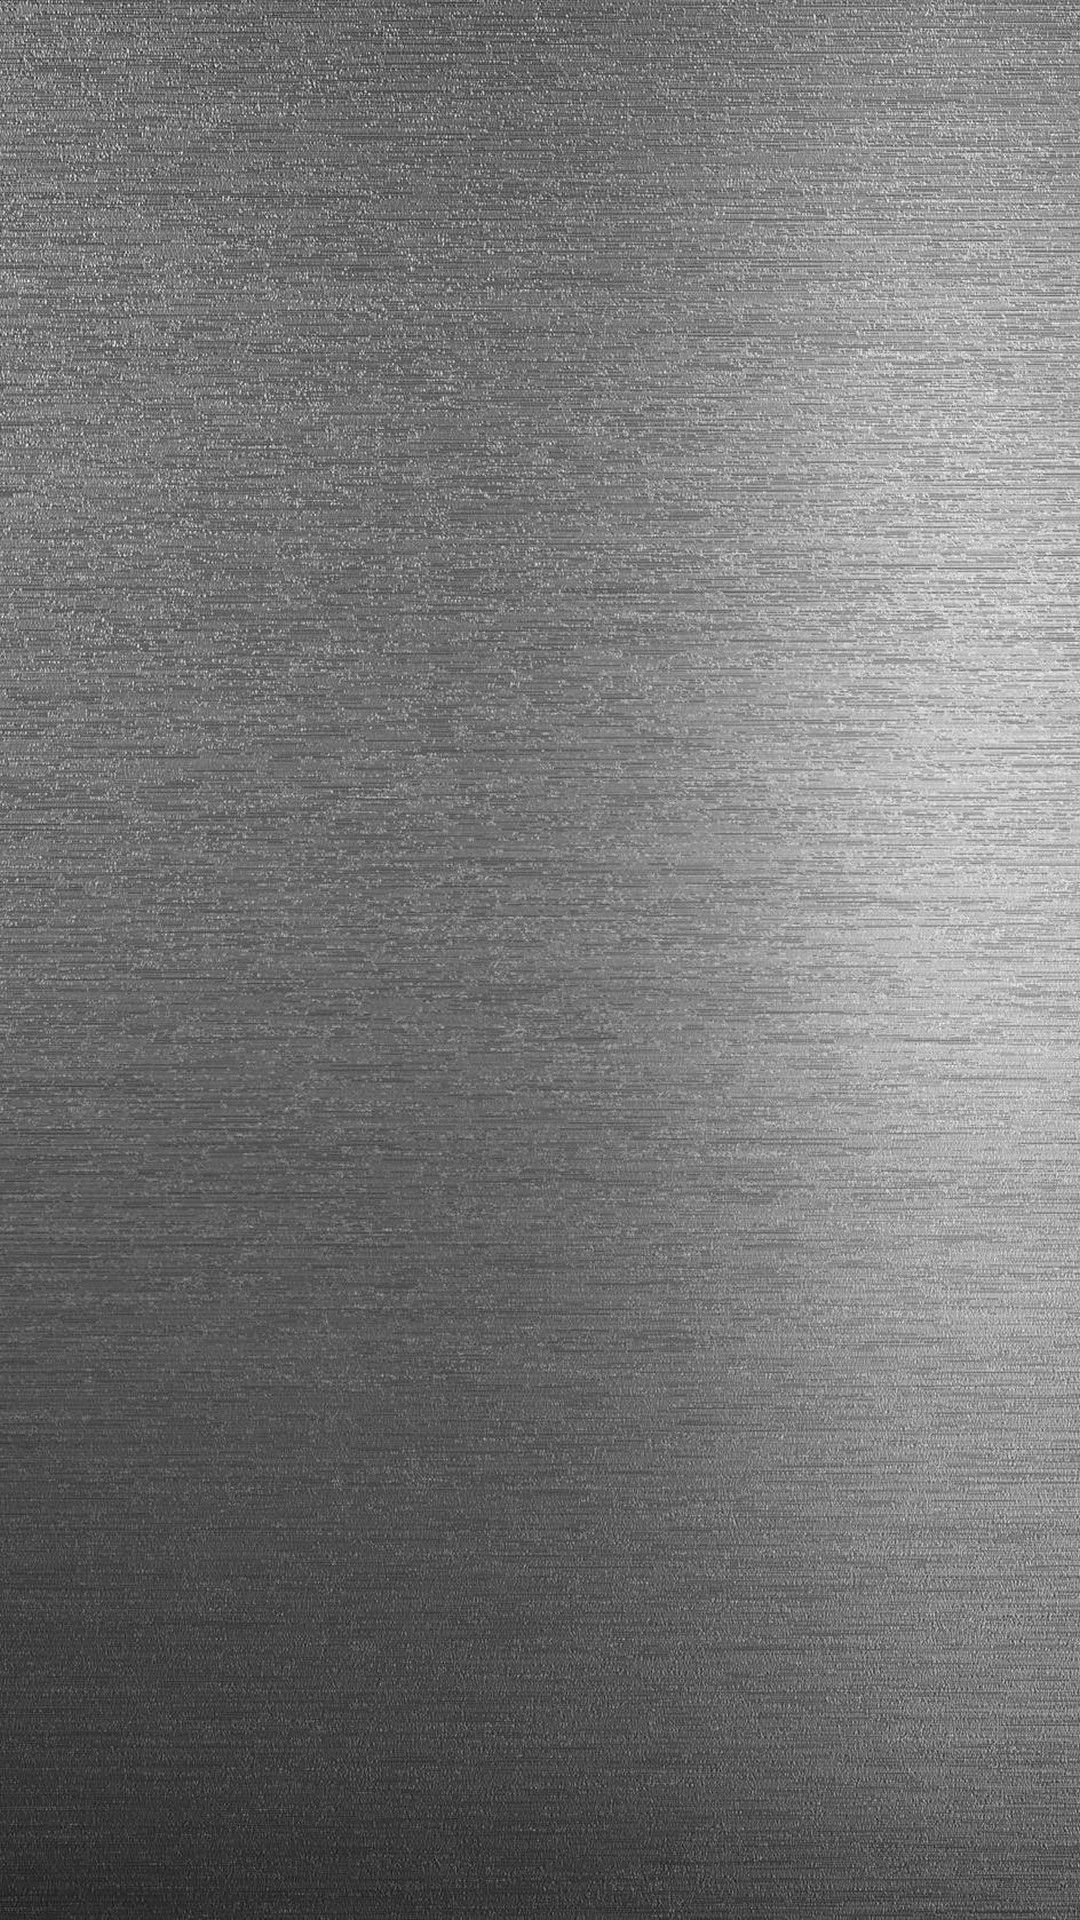 Solid dark grey HD wallpapers  Pxfuel